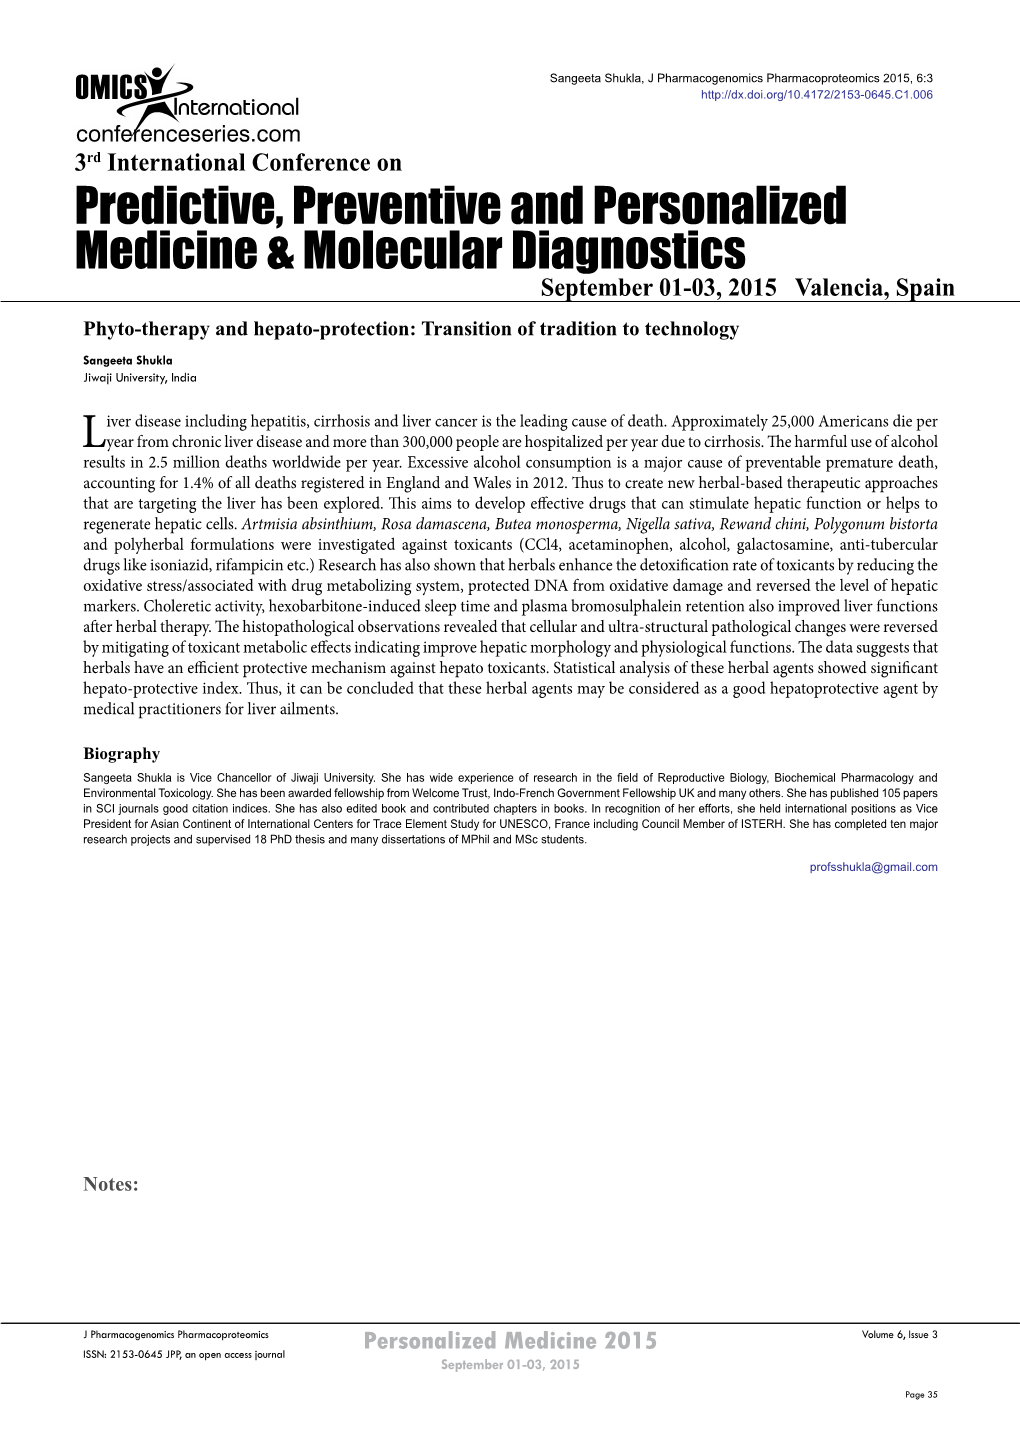 Predictive, Preventive and Personalized Medicine & Molecular